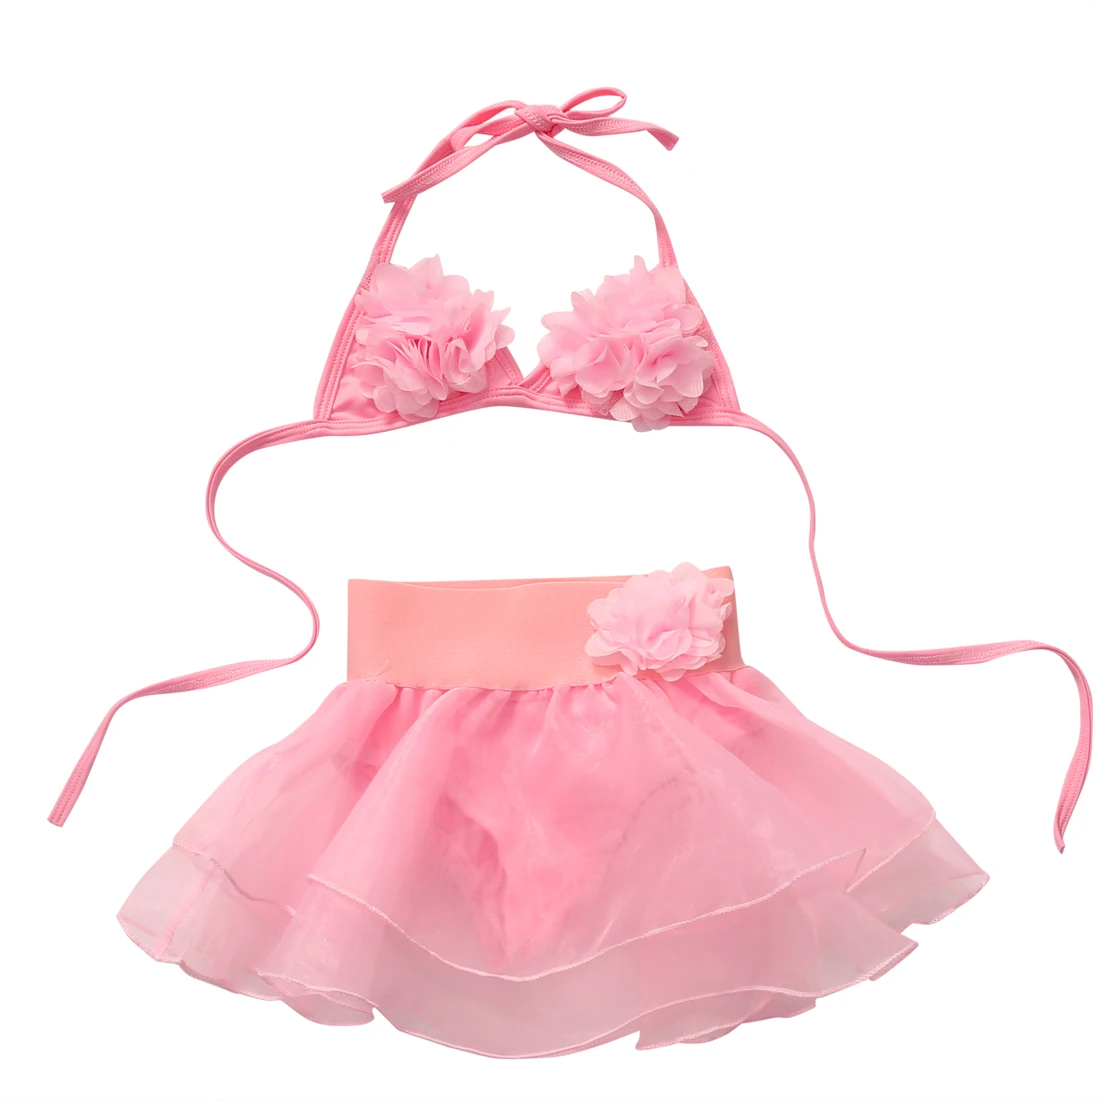 Купальник-бикини для девочек 1-6 лет розовый купальный костюм пляжная одежда |